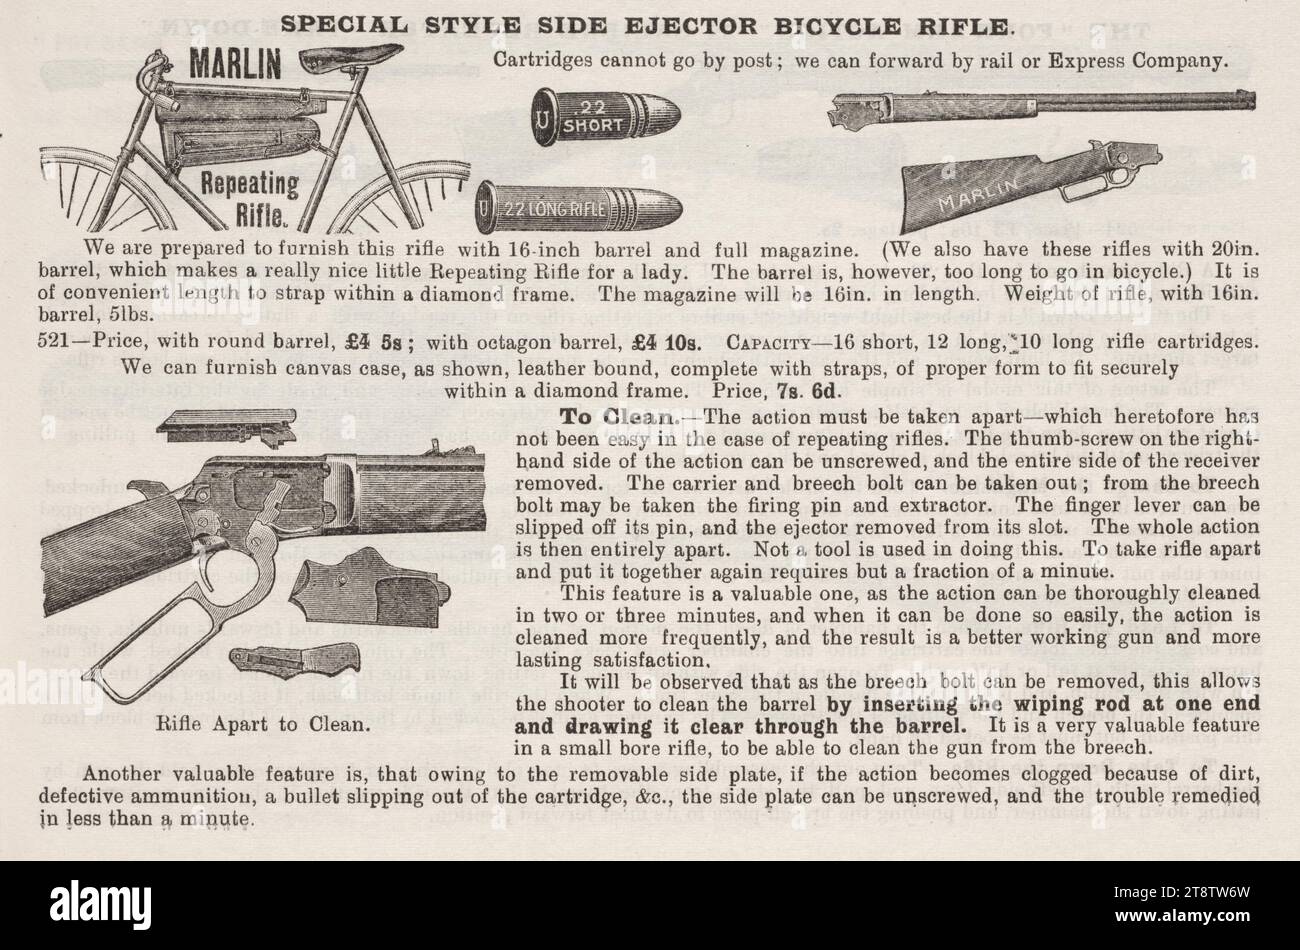 A & W McCarthy (Firm): Fucile da bicicletta a eiettore laterale in stile speciale 1902, un annuncio per un fucile ripetuto Marlin con un'illustrazione di uno attaccato a una bicicletta. Sono mostrate due misure di proiettile, e c'è un'illustrazione del fucile smontato per la pulizia. Il testo fornisce le istruzioni per la pulizia Foto Stock